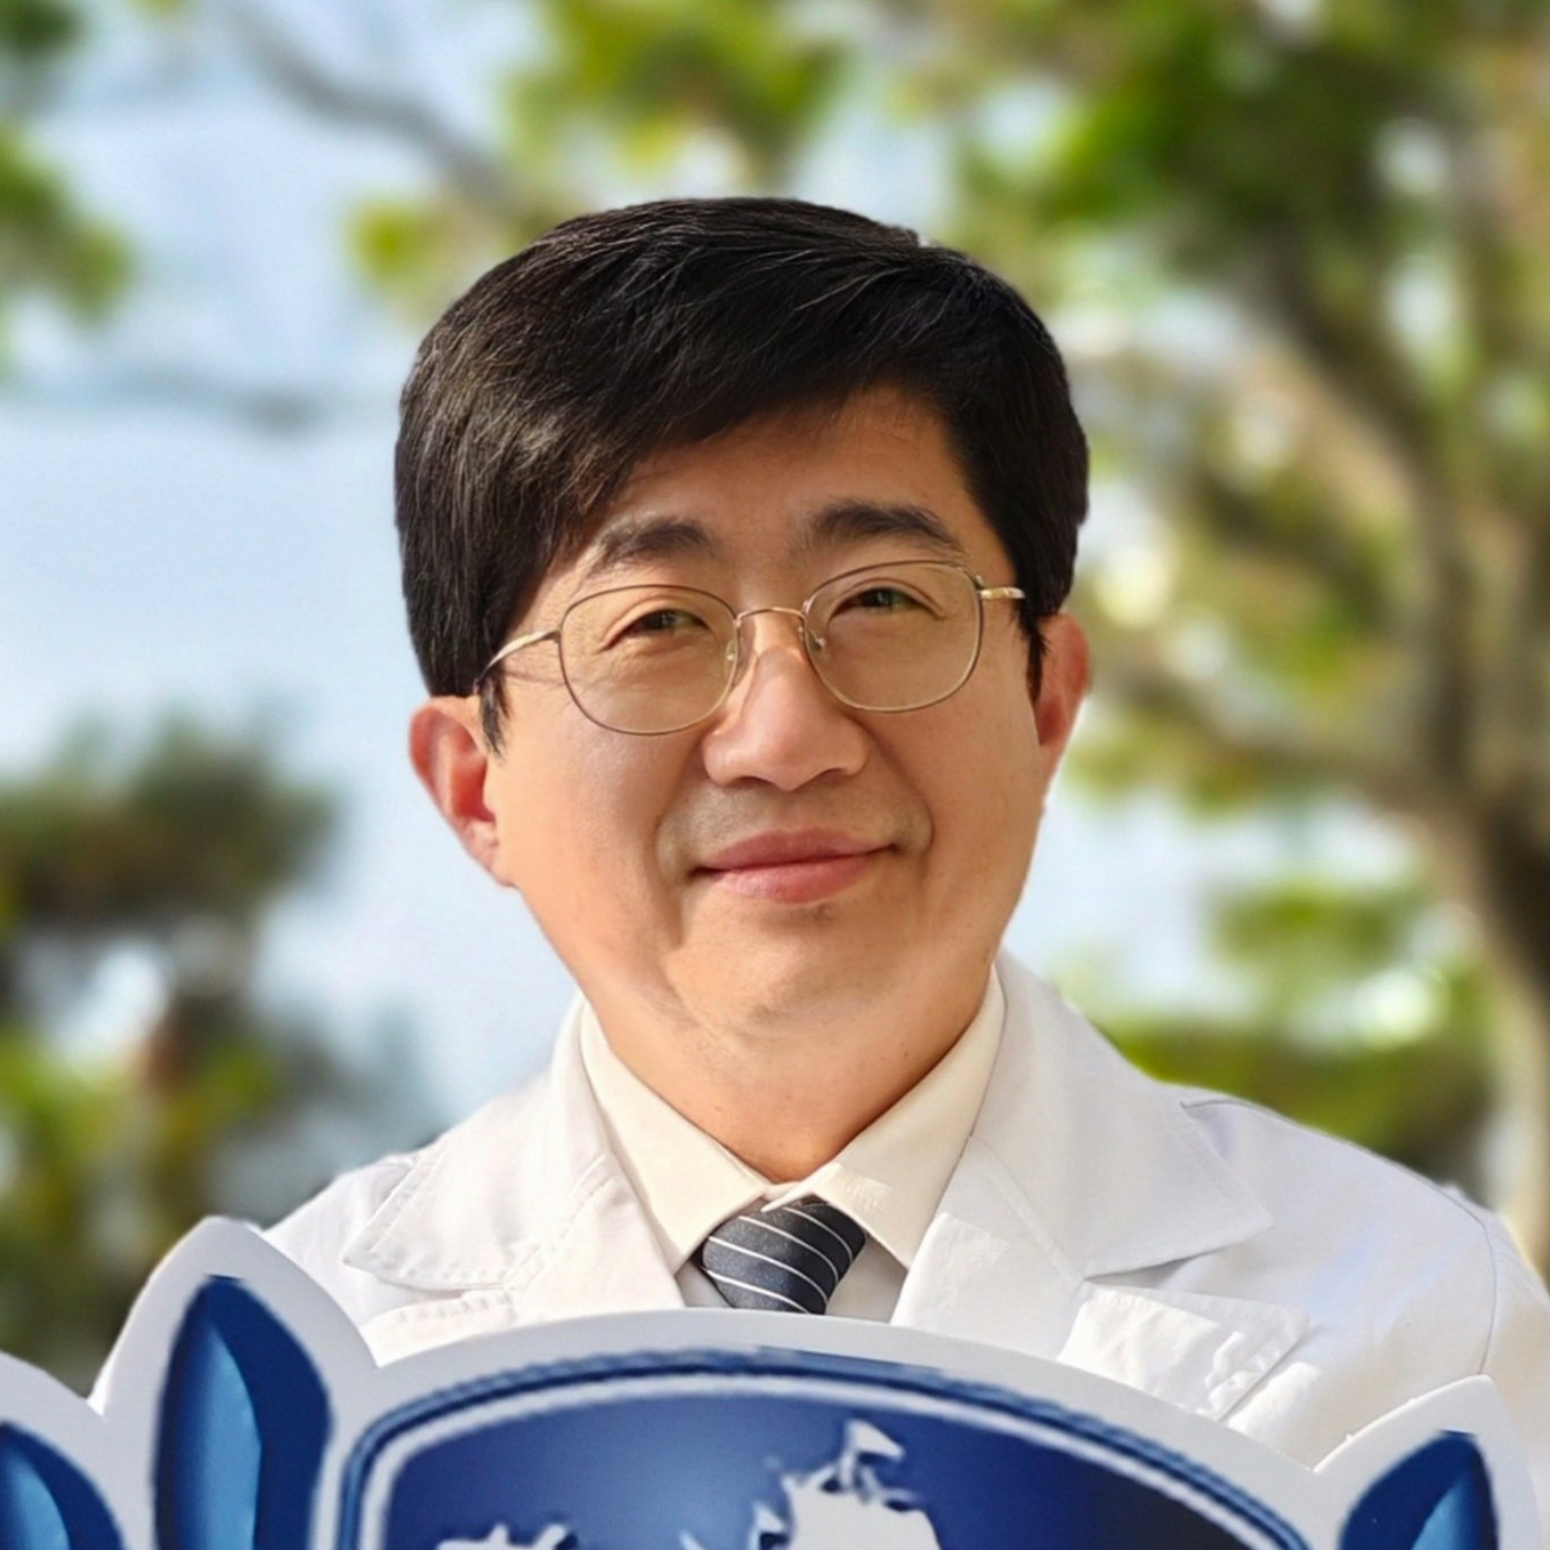 Dr. Ming-Nan Lin